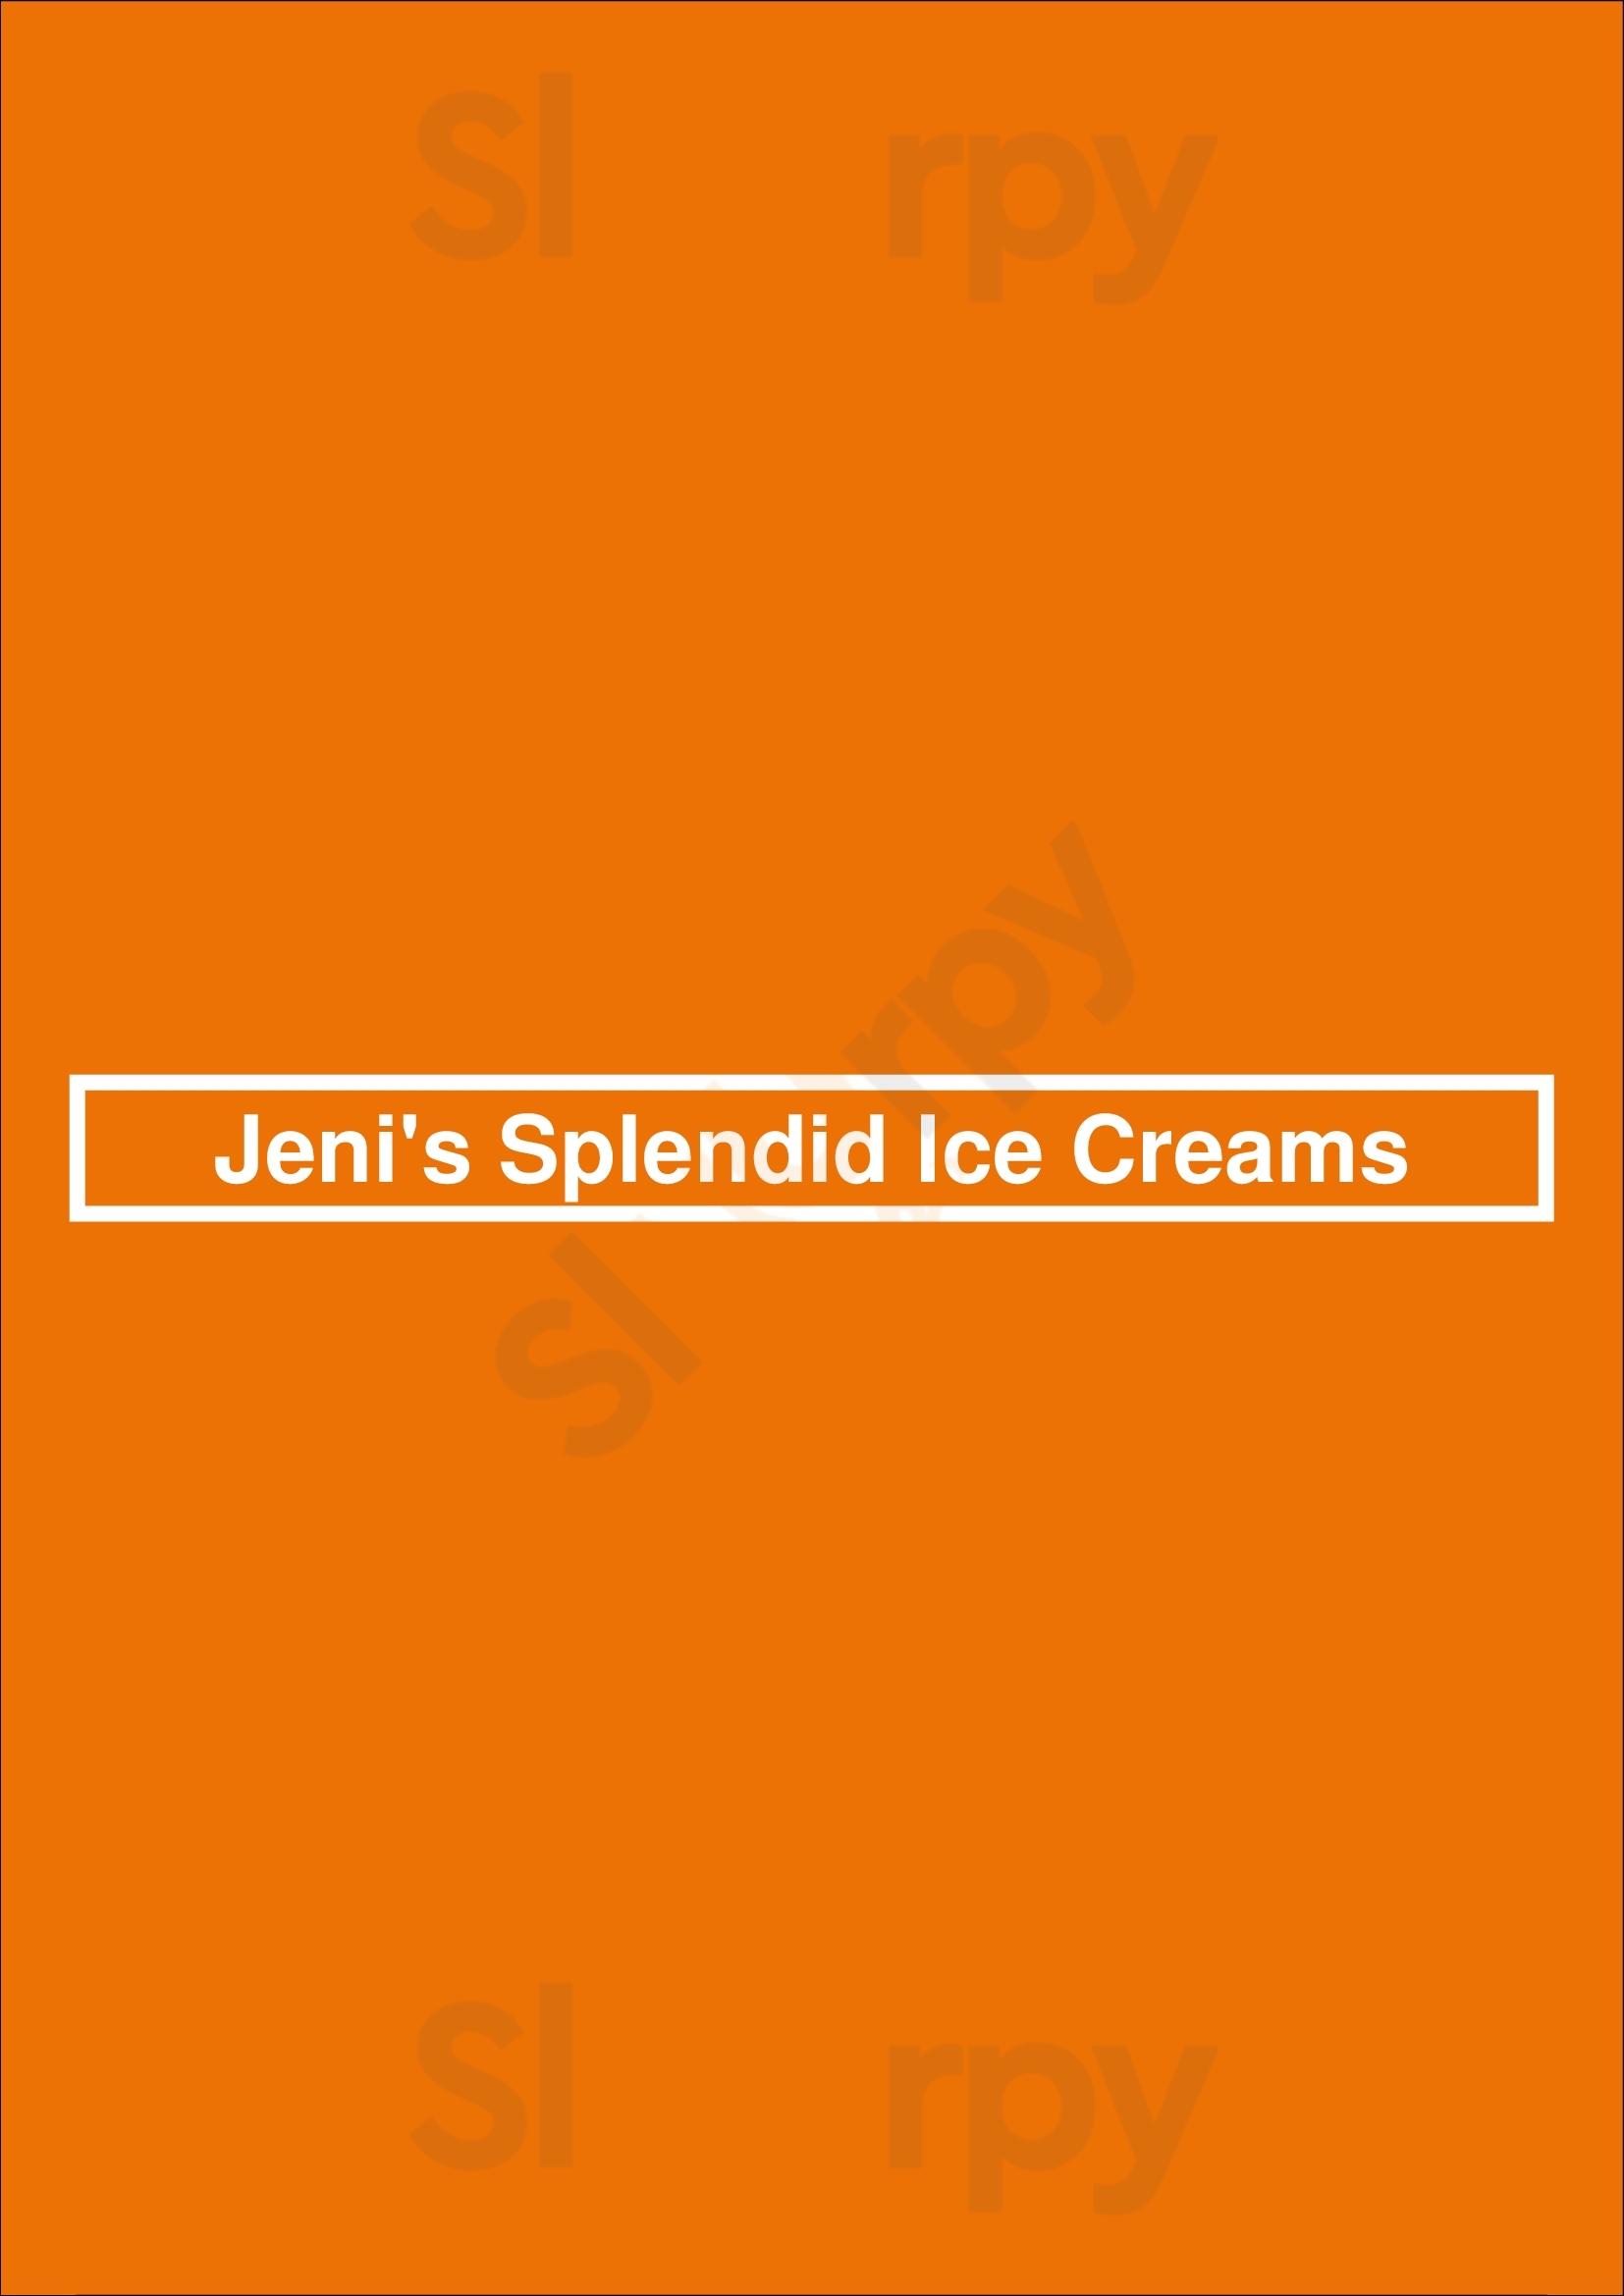 Jeni's Splendid Ice Creams Columbus Menu - 1